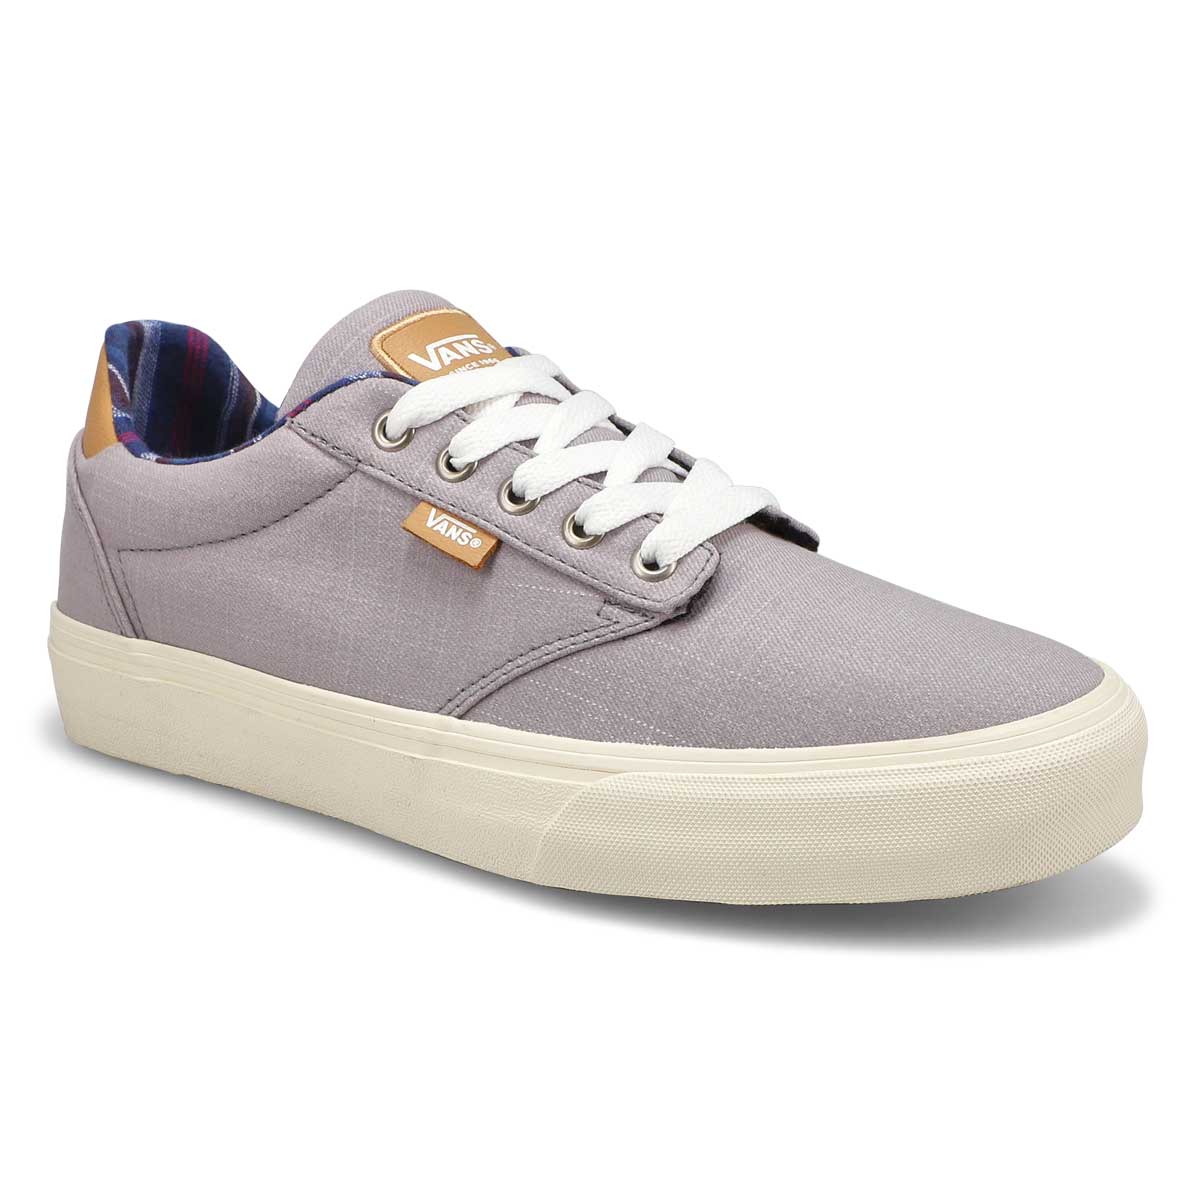 Vans Men's Atwood Deluxe Sneaker - Frost Gray | SoftMoc.com